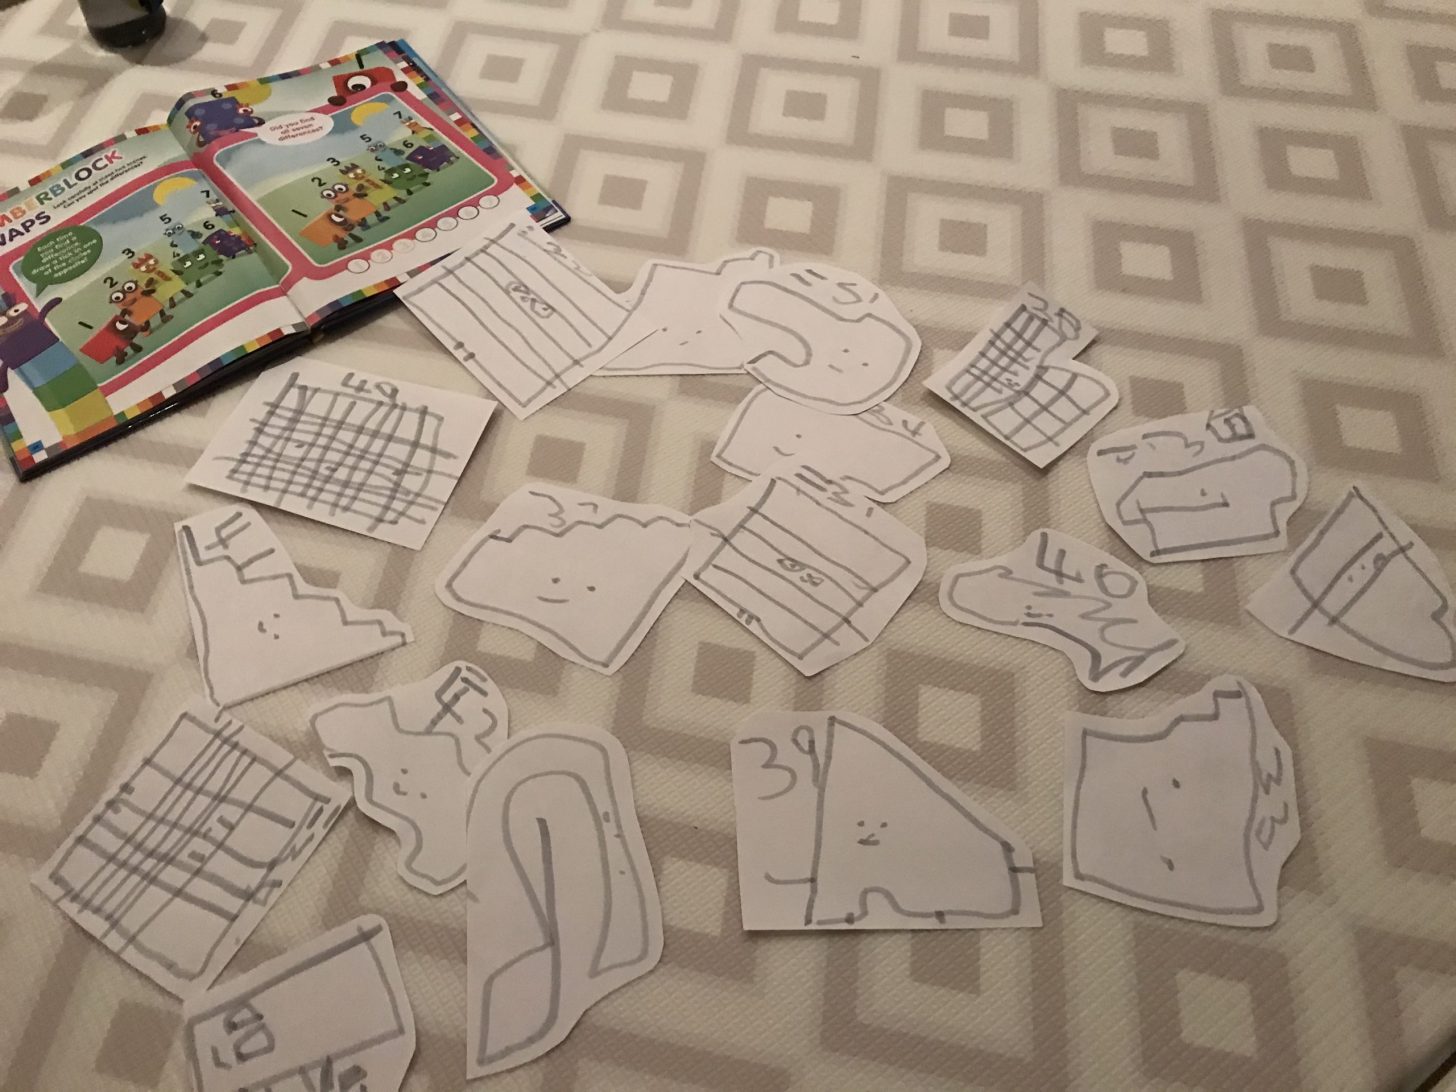 I giocattoli Frugal possono essere disegnati su carta, che è un'ottima pratica per i bambini in età prescolare